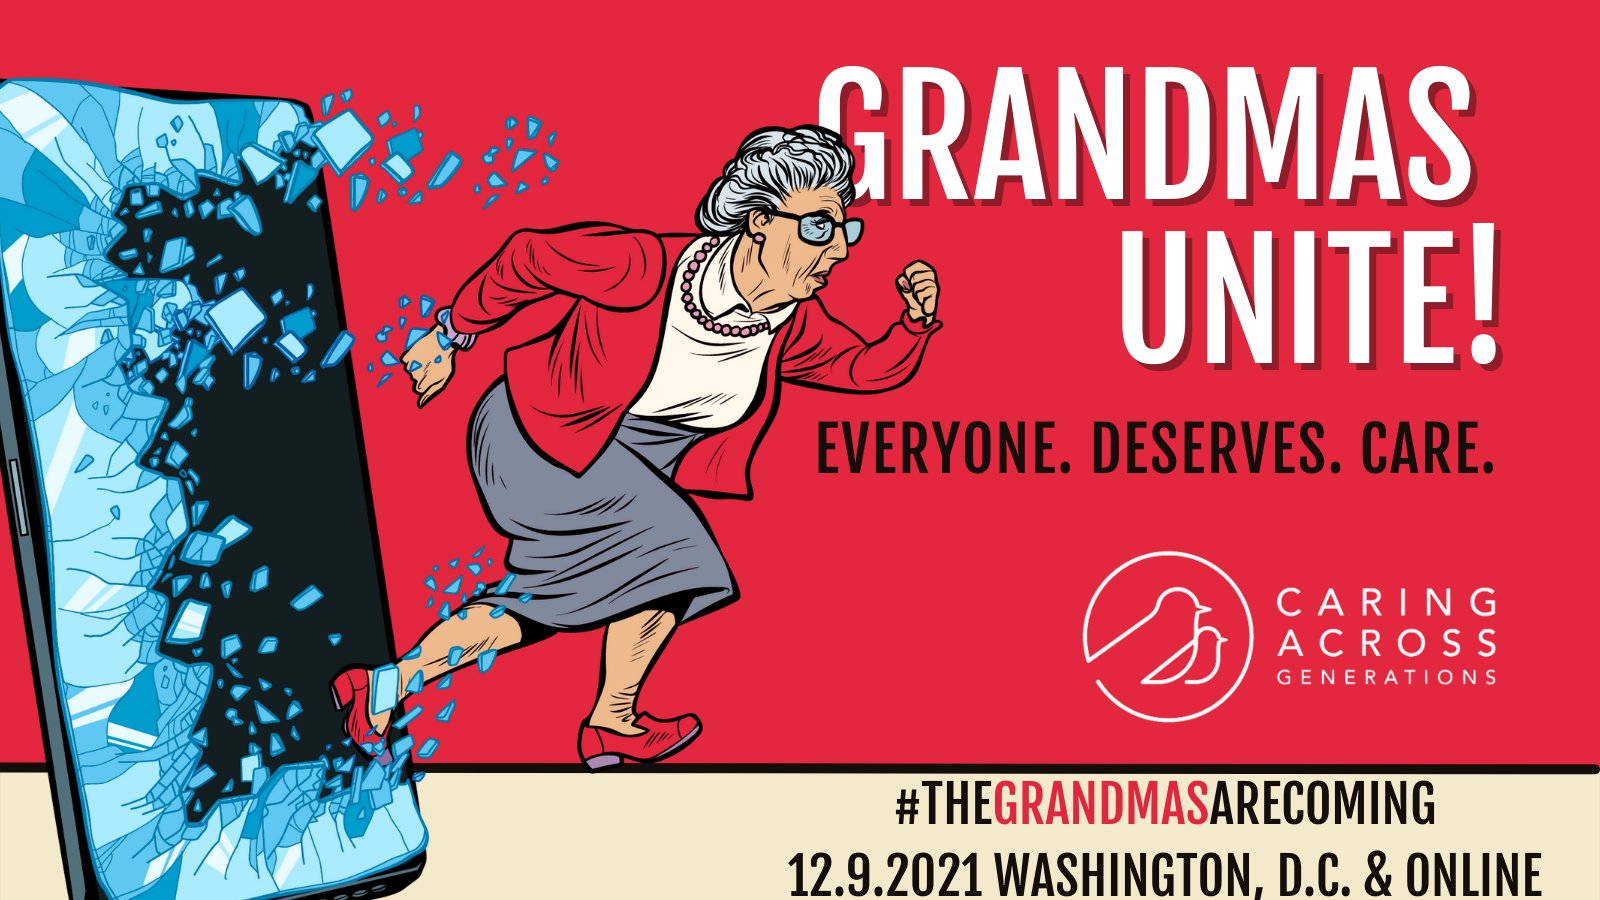 Grandmas Unite!